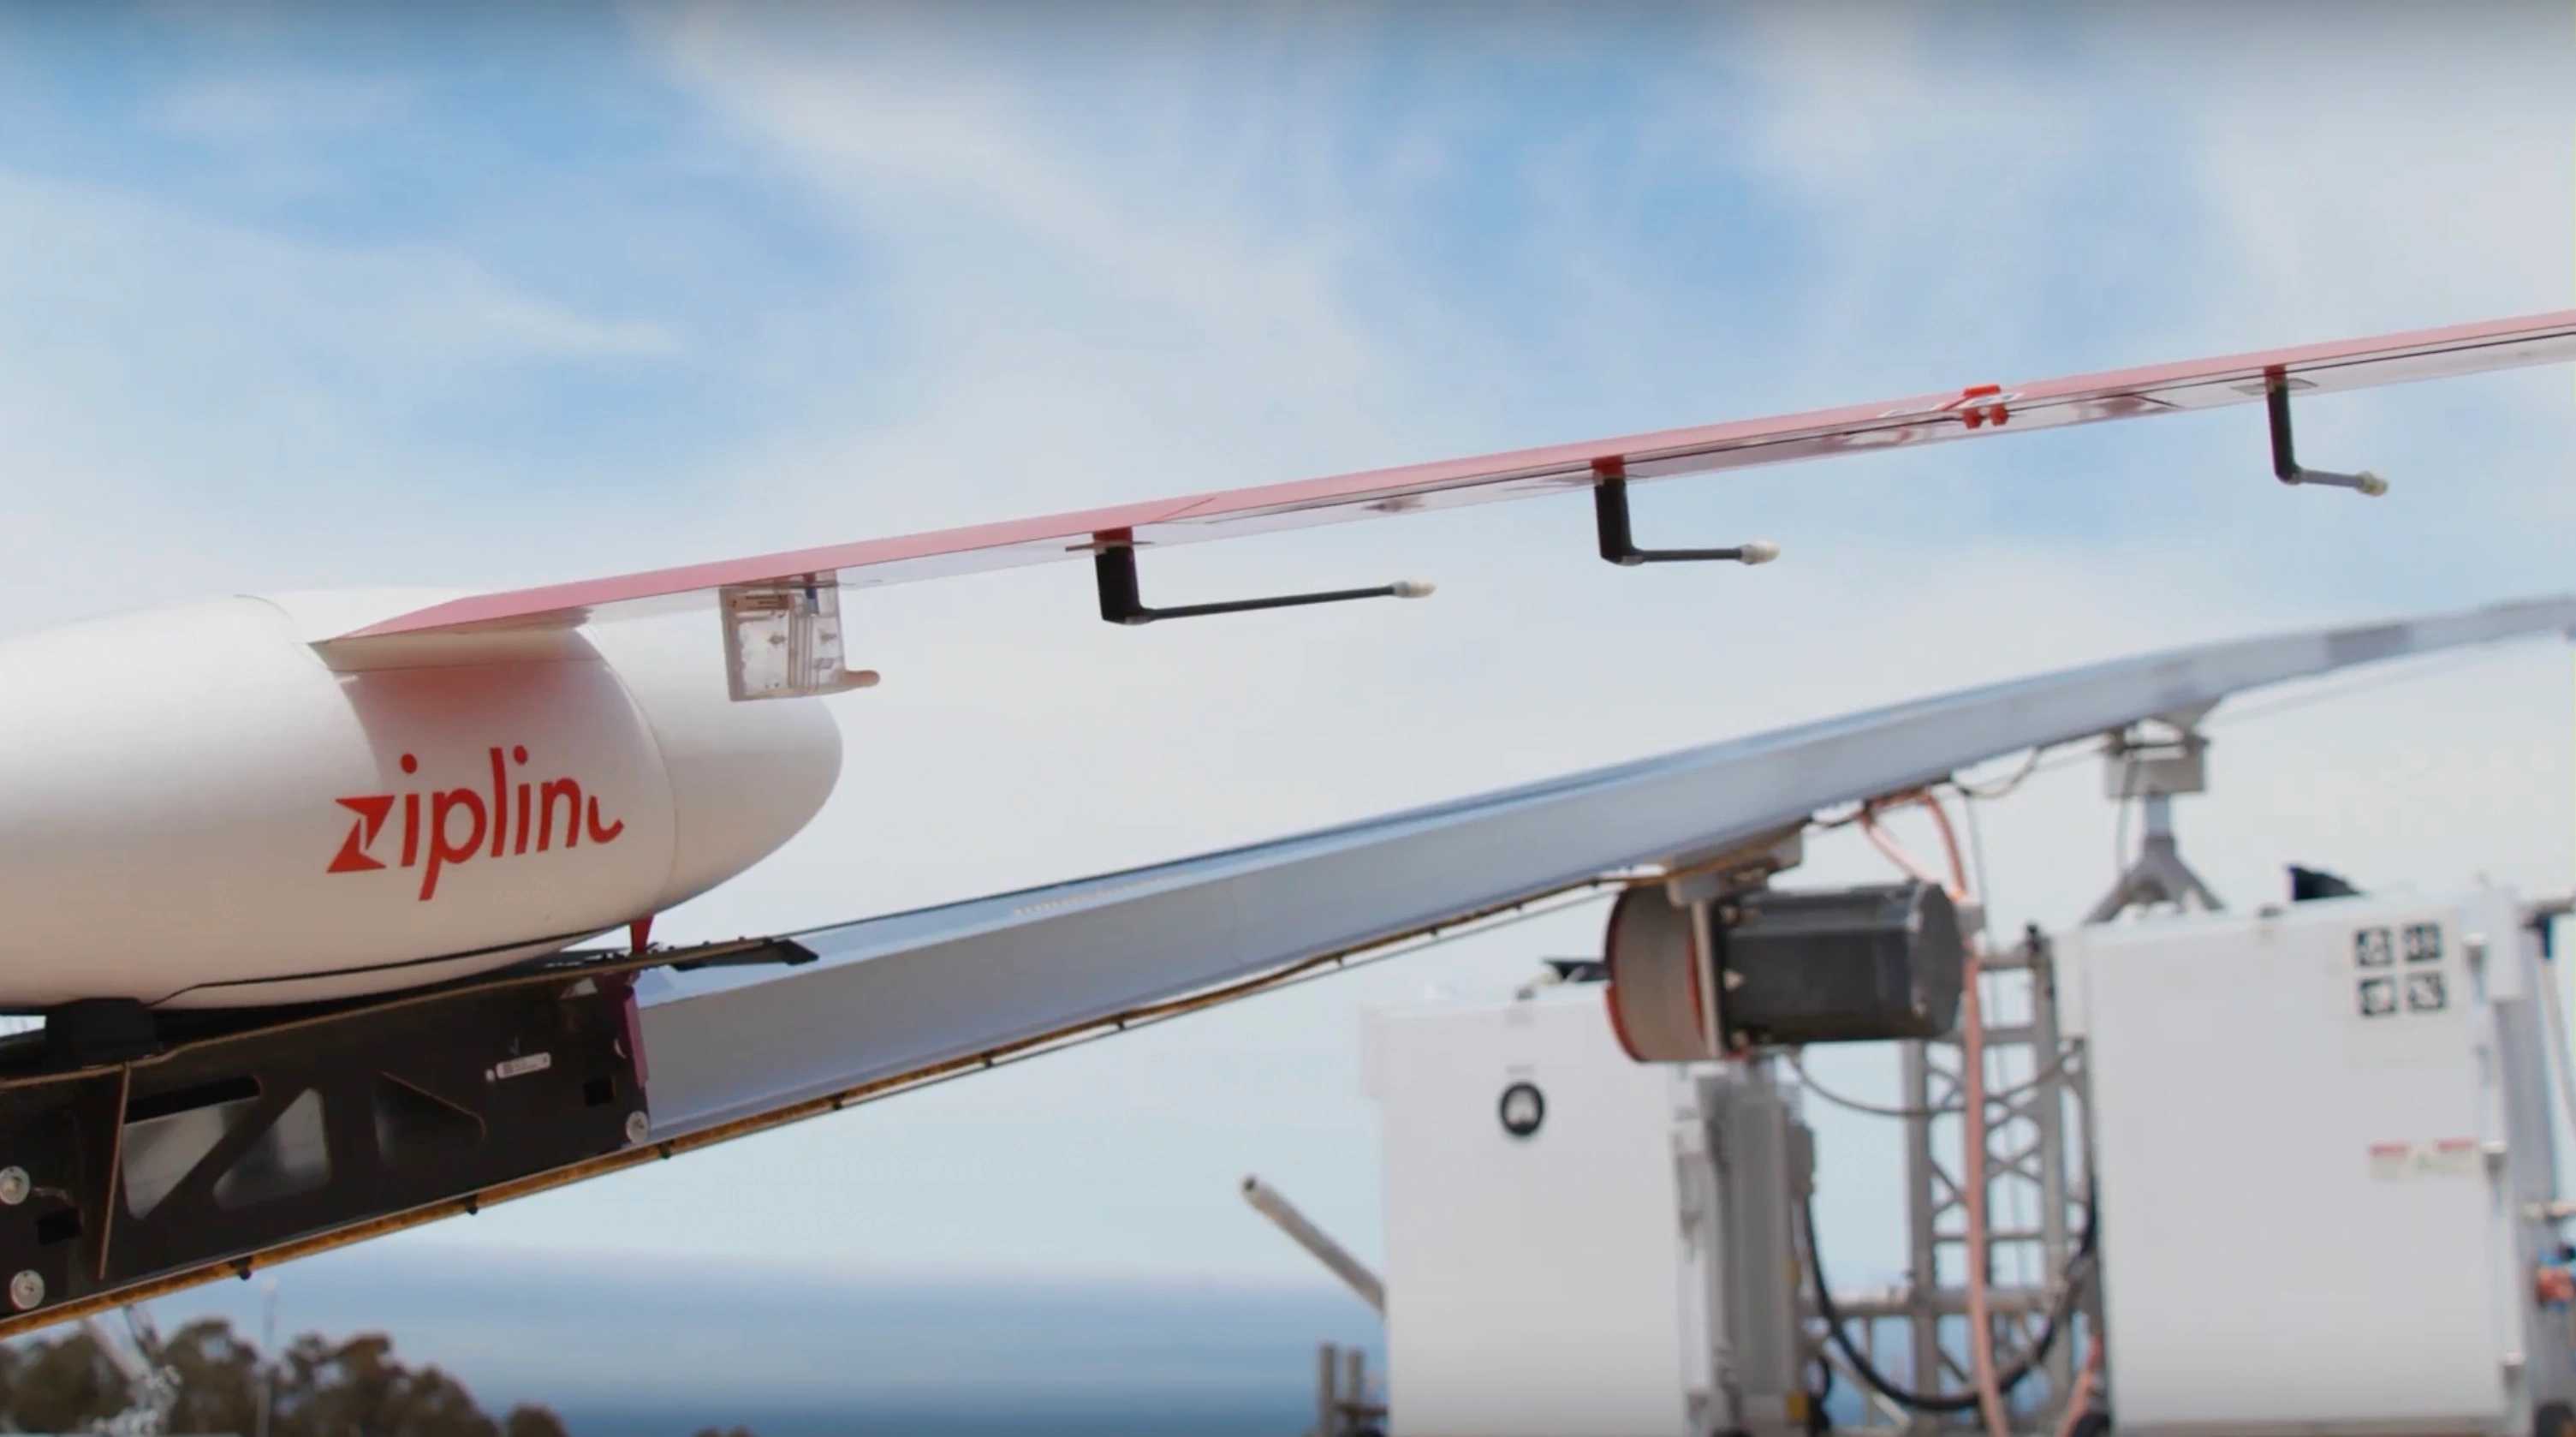 Zipline научила дроны слышать самолеты и избегать столкновения с ними